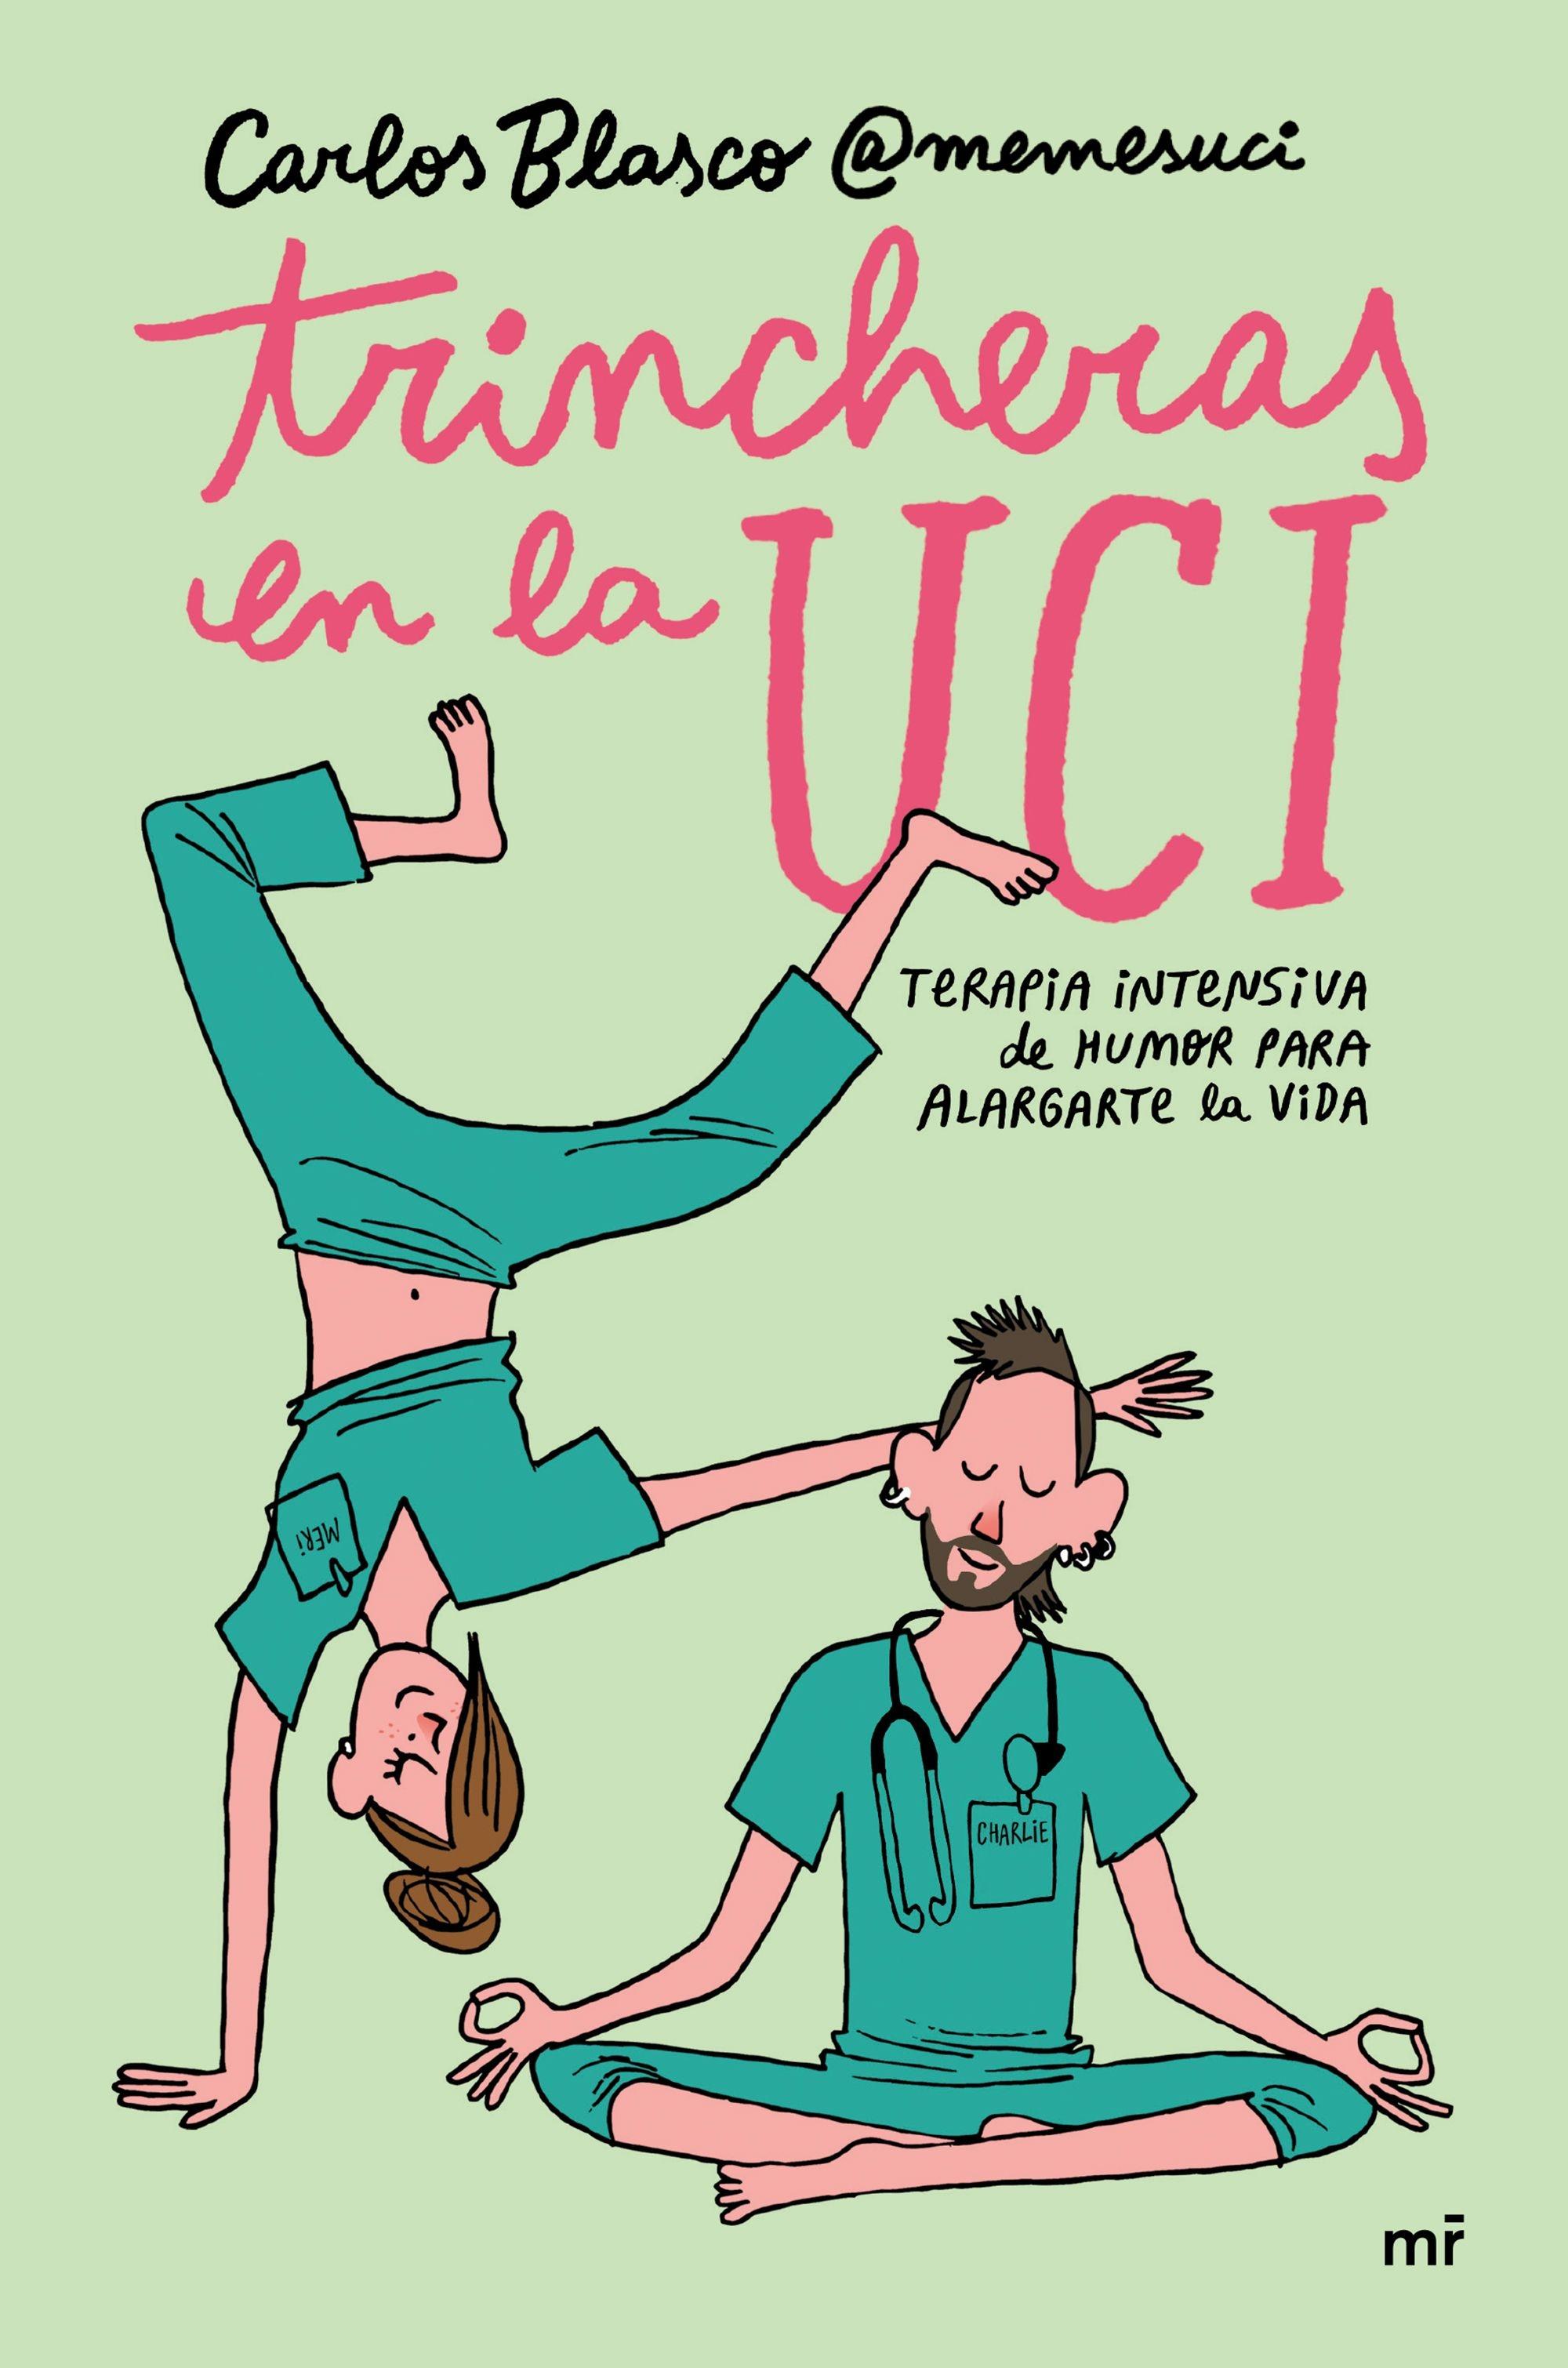 Trincheras en la UCI "Terapia intensiva de humor para alargarte la vida". 